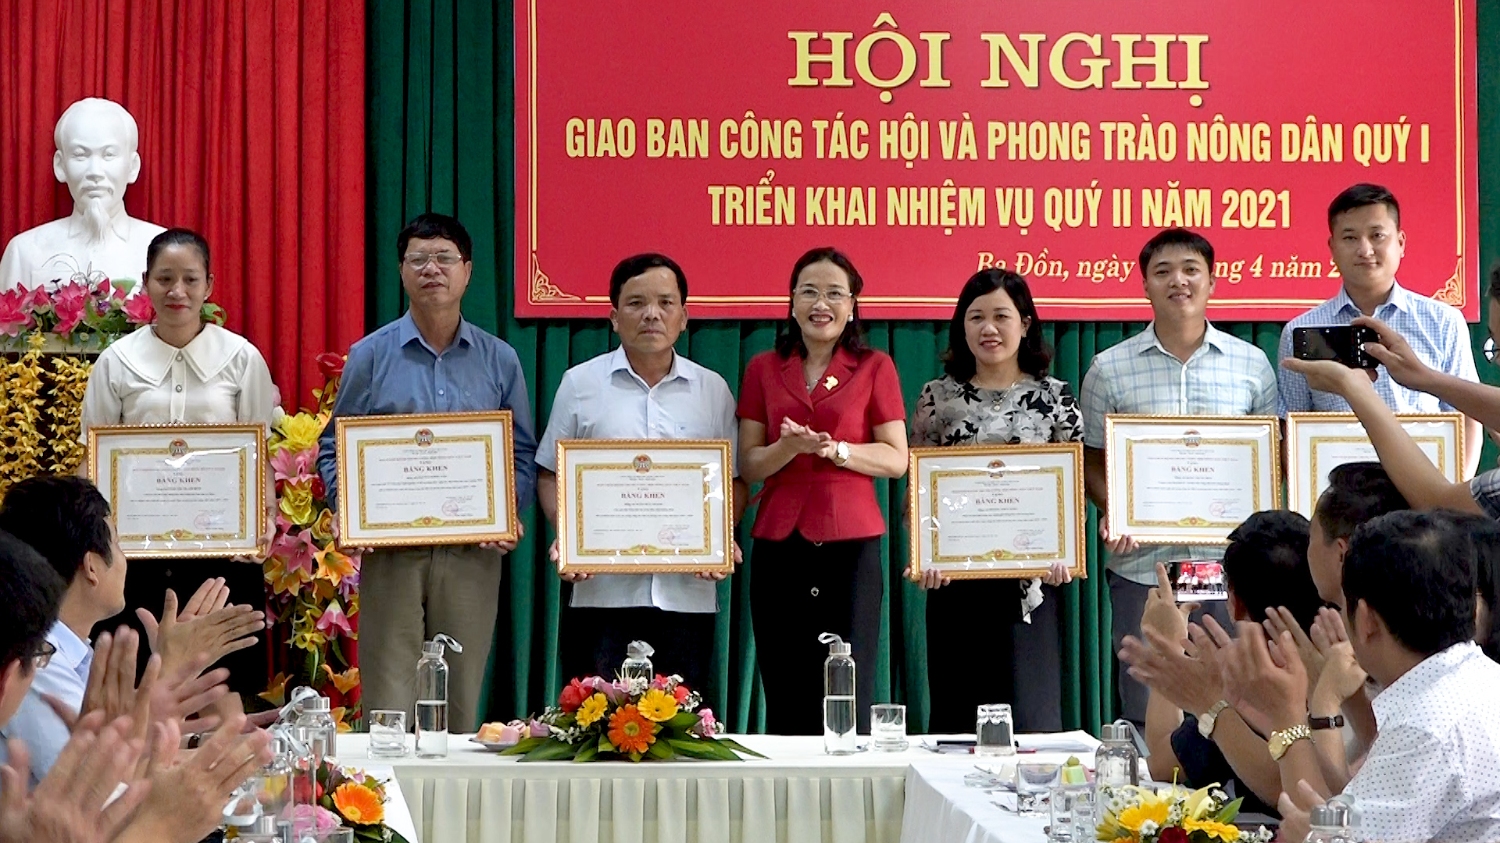 Trung ương Hội Nông dân Việt Nam tặng Bằng khen cho các tập thể và cá nhân có thành tích xuất sắc trong công tác Hội và phong trào nông dân năm 2019 2020